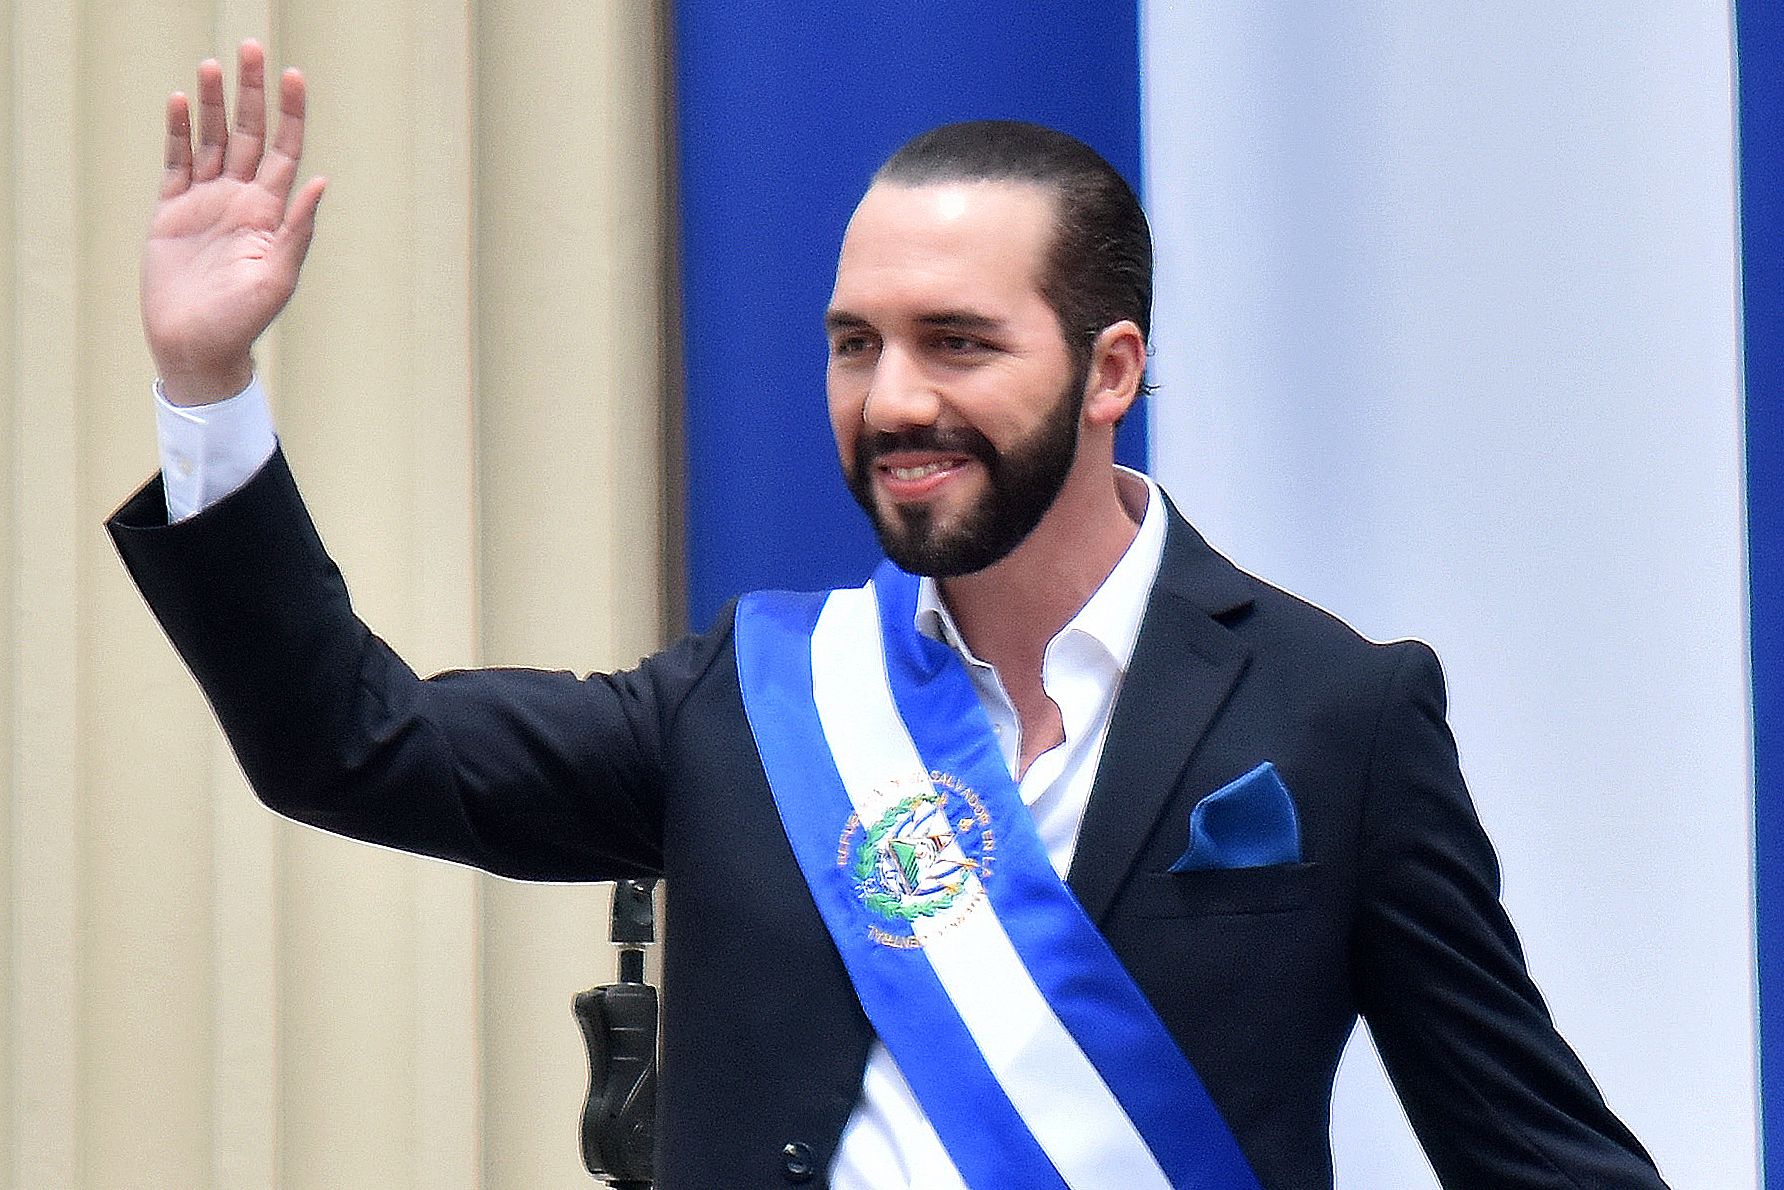 El presidente de El Salvador, Nayib Bukele, se postulará para un segundo mandato en 2024, lo que ha generado fuertes críticas. (Foto Prensa Libre: AFP)